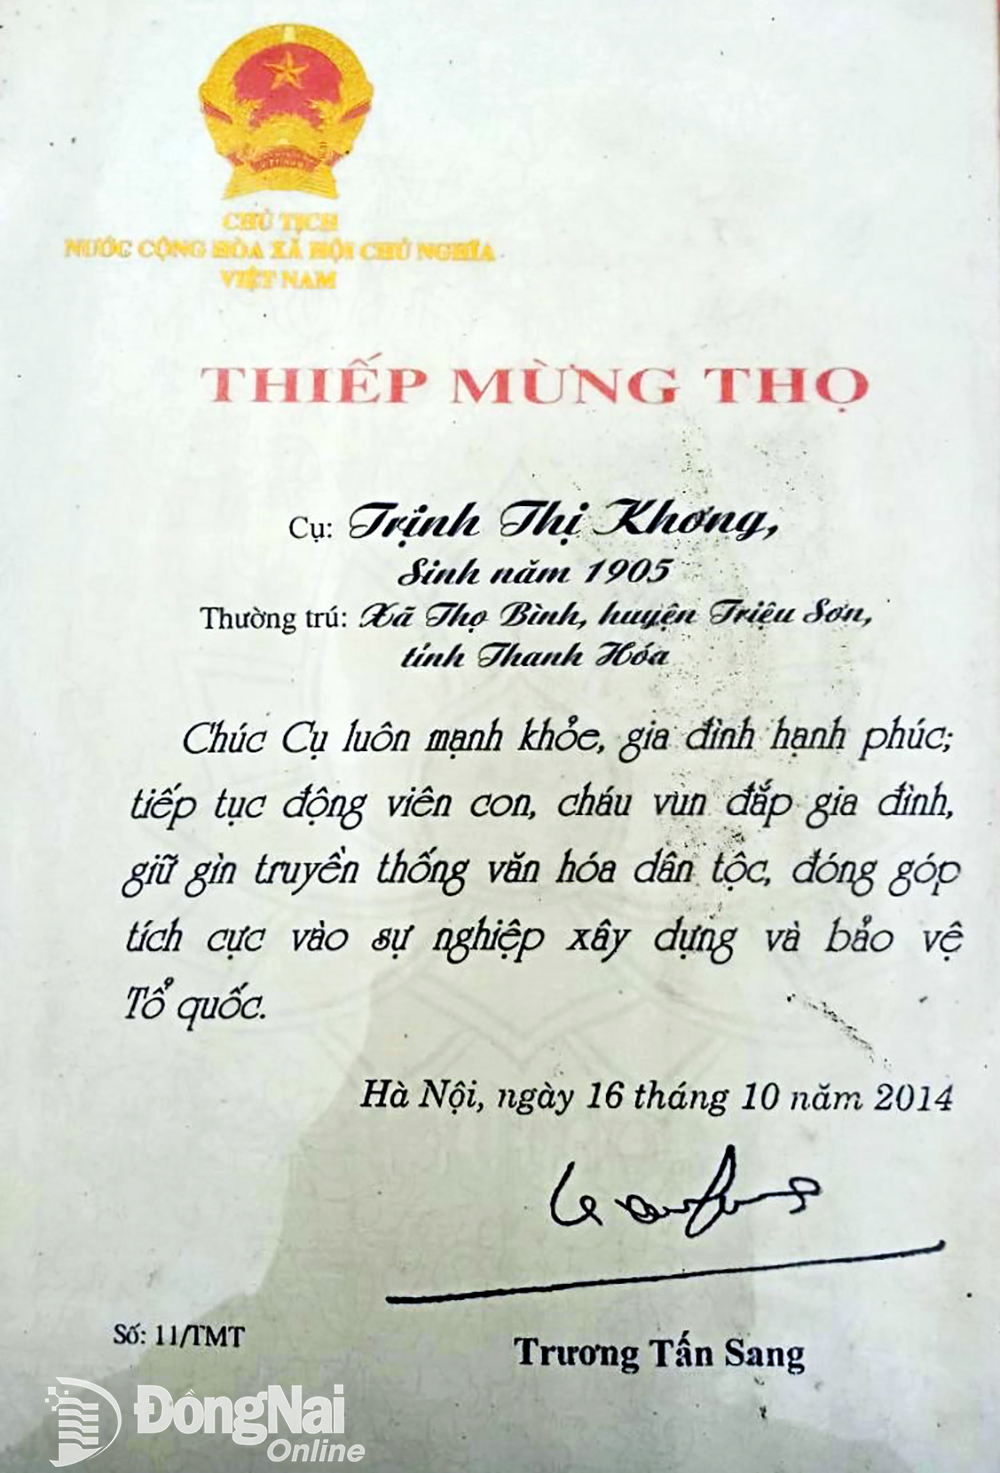 Thiếp Mừng thọ do Chủ tịch nước Trương Tấn Sang tặng cụ Trịnh Thị Khơng cách đây 10 năm khi cụ chuẩn bị đón tuổi 110